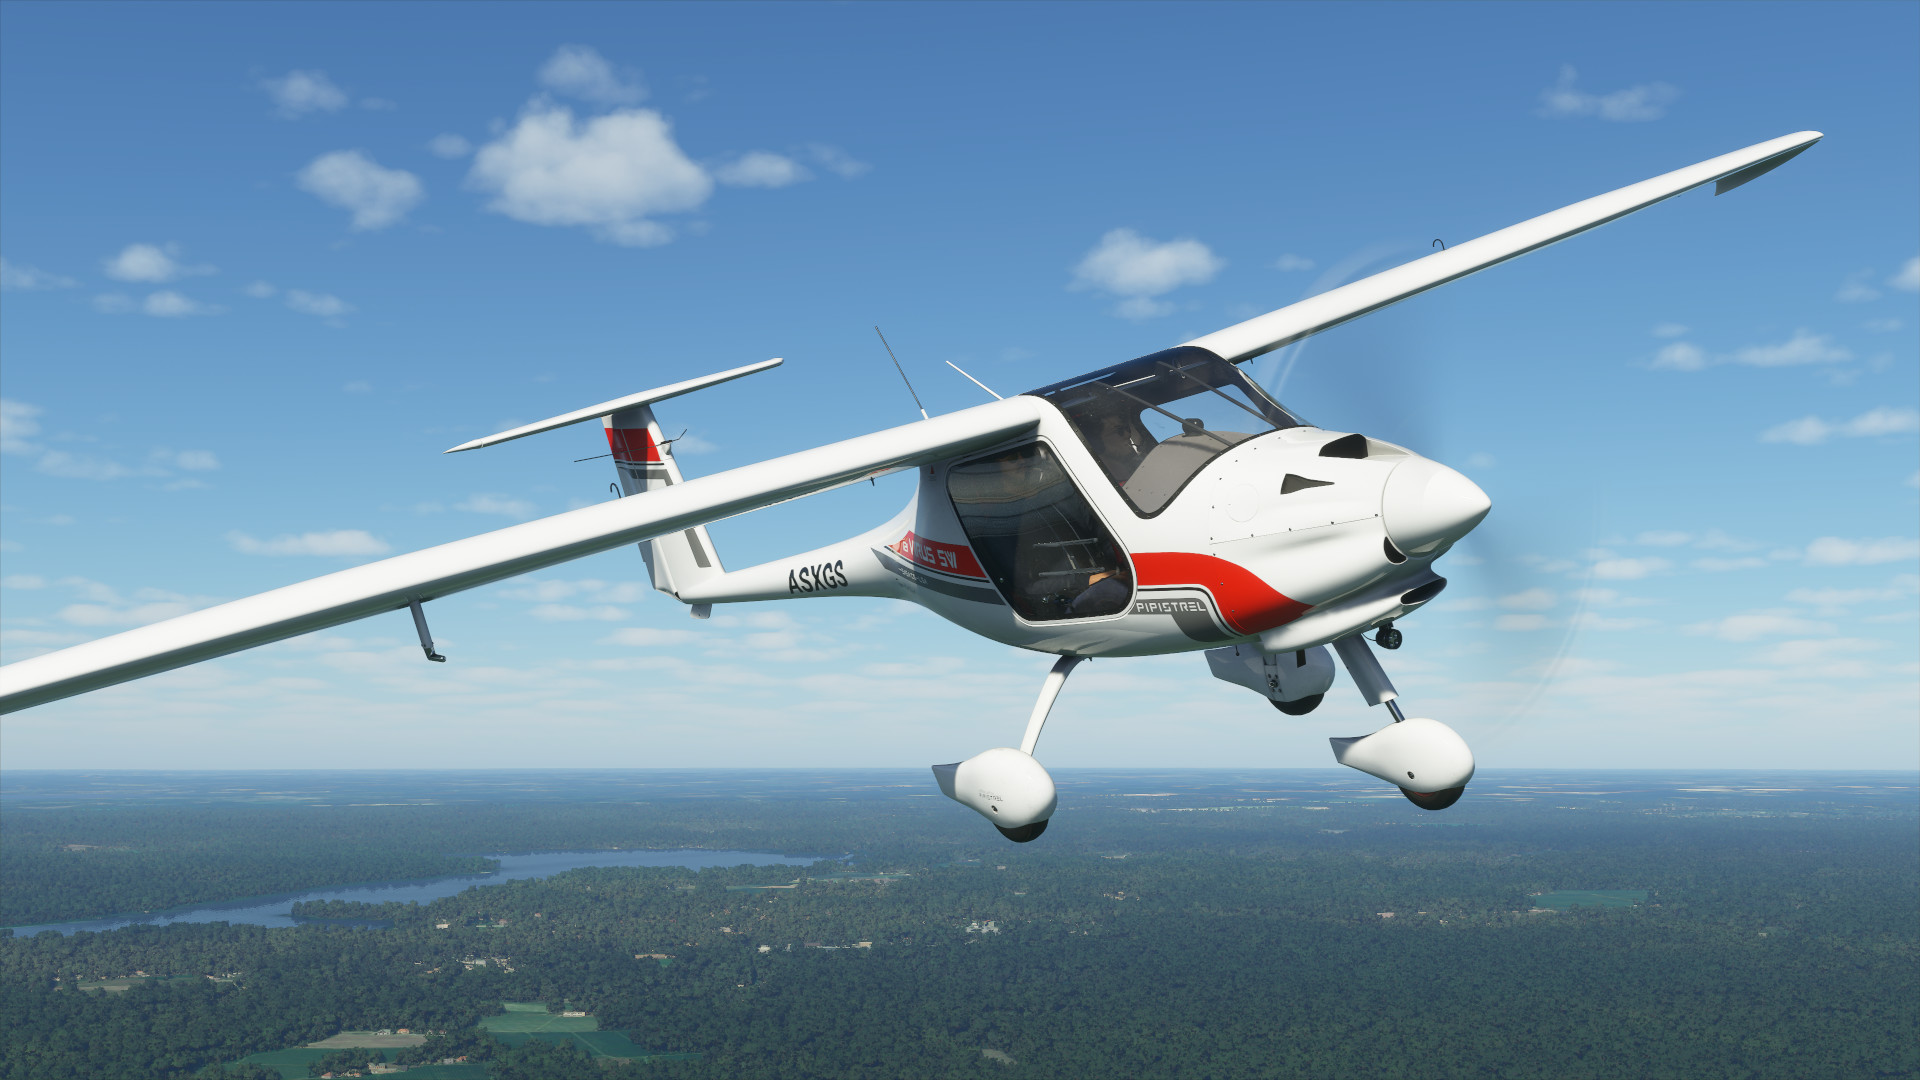 Microsoft Flight Simulatorin ensimmäinen korjaustiedosto tulossa ensi viikolla; Alustavat muistiinpanot julkaistu